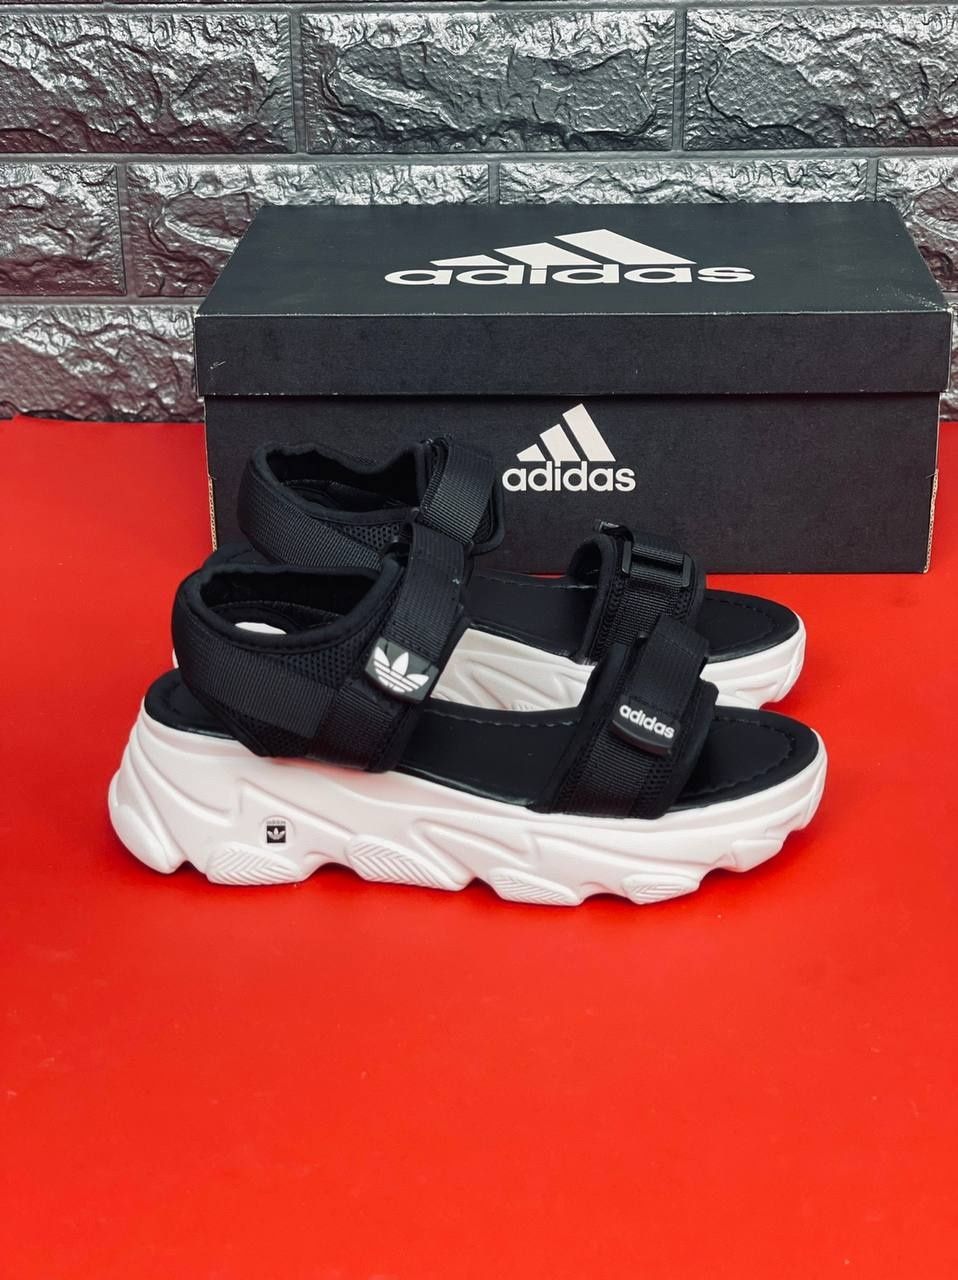 Женские босоножки Adidas сандалии чёрного цвета Адидас 35-40